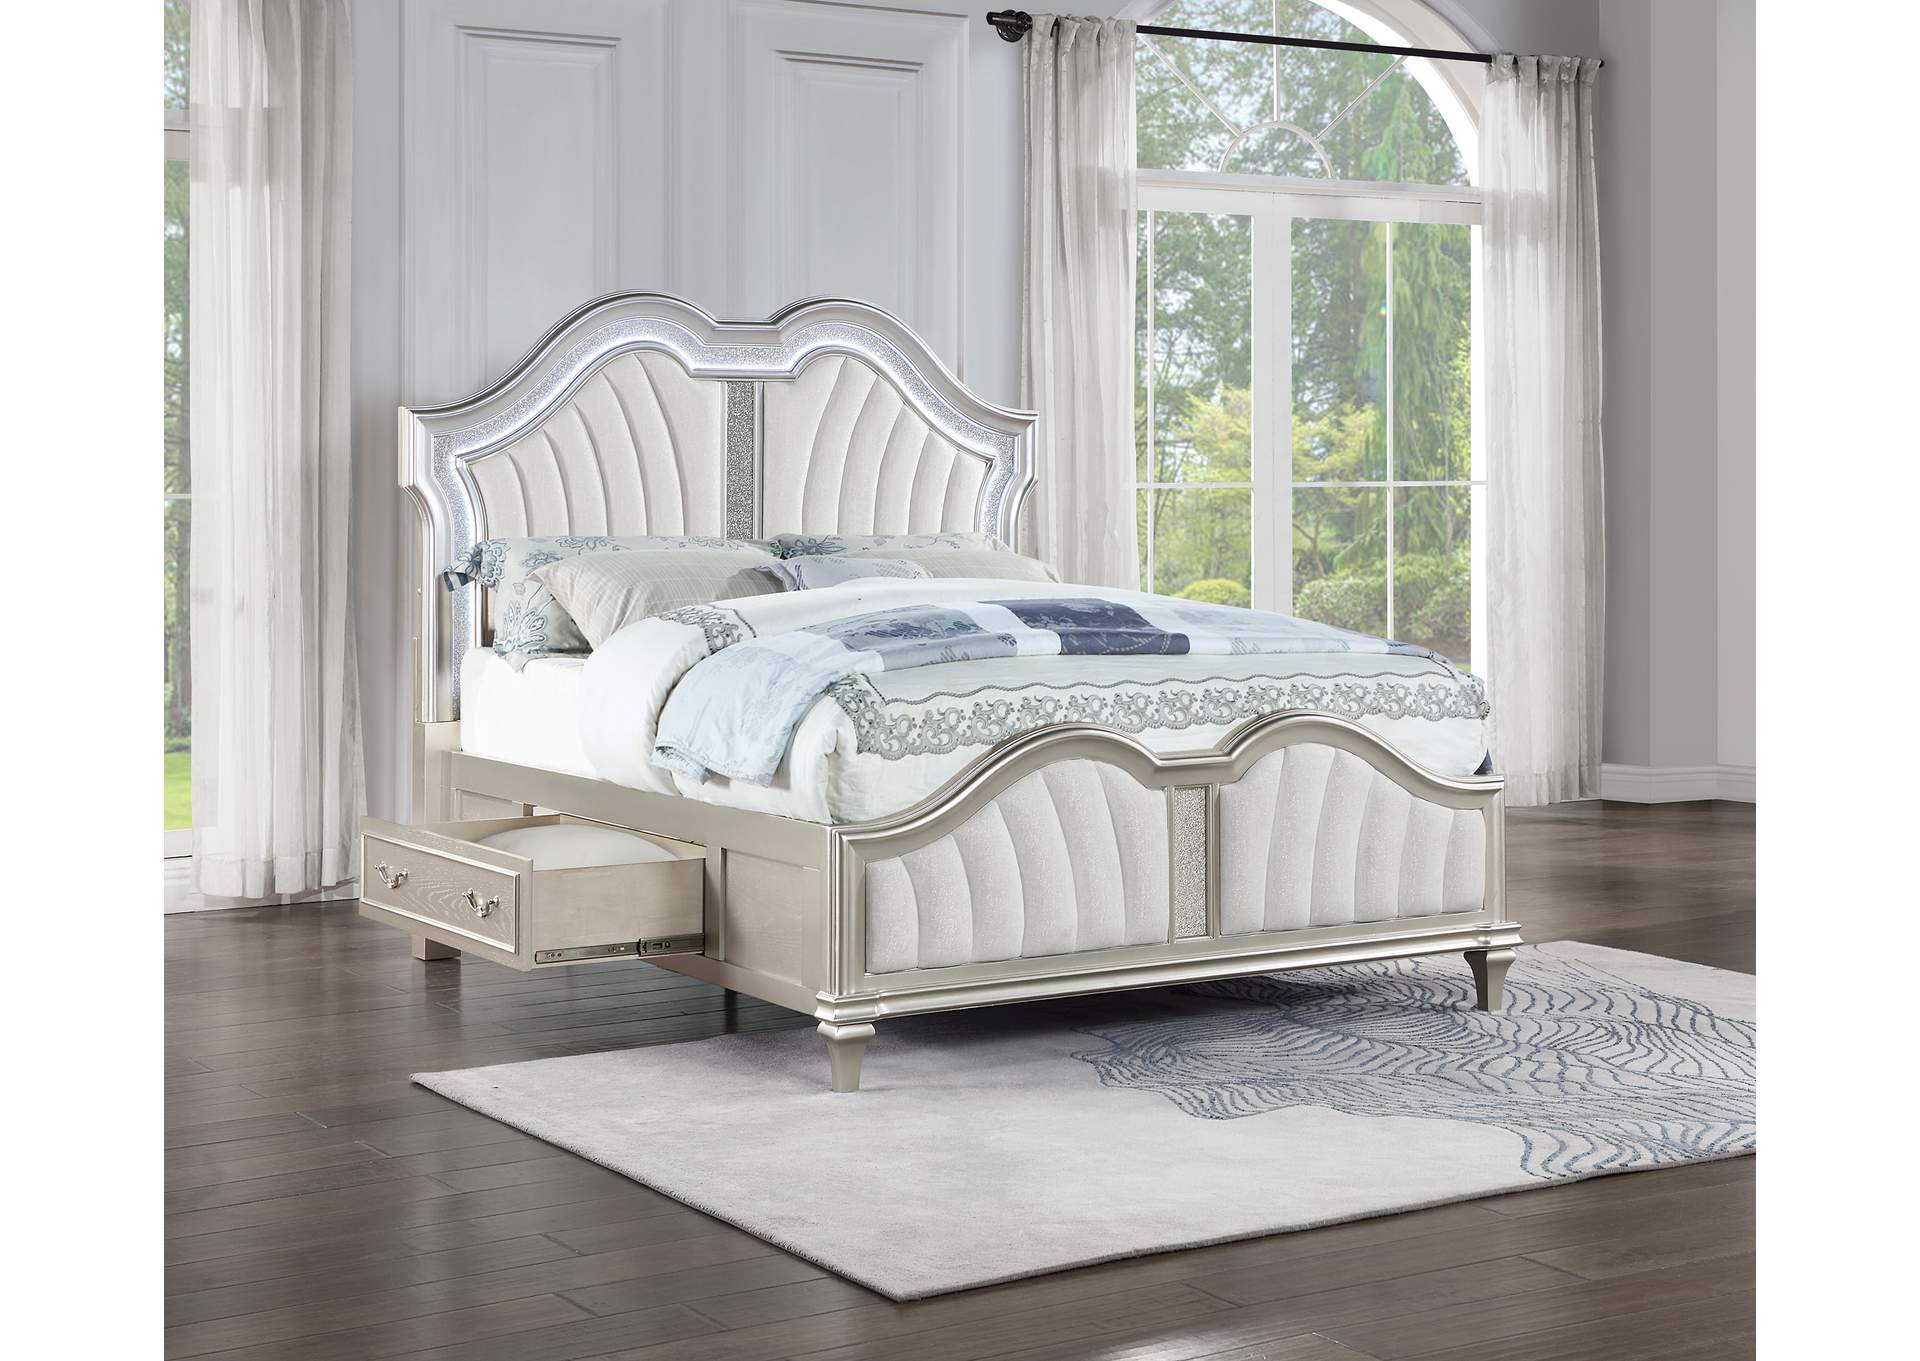 E KING BED,Coaster Furniture